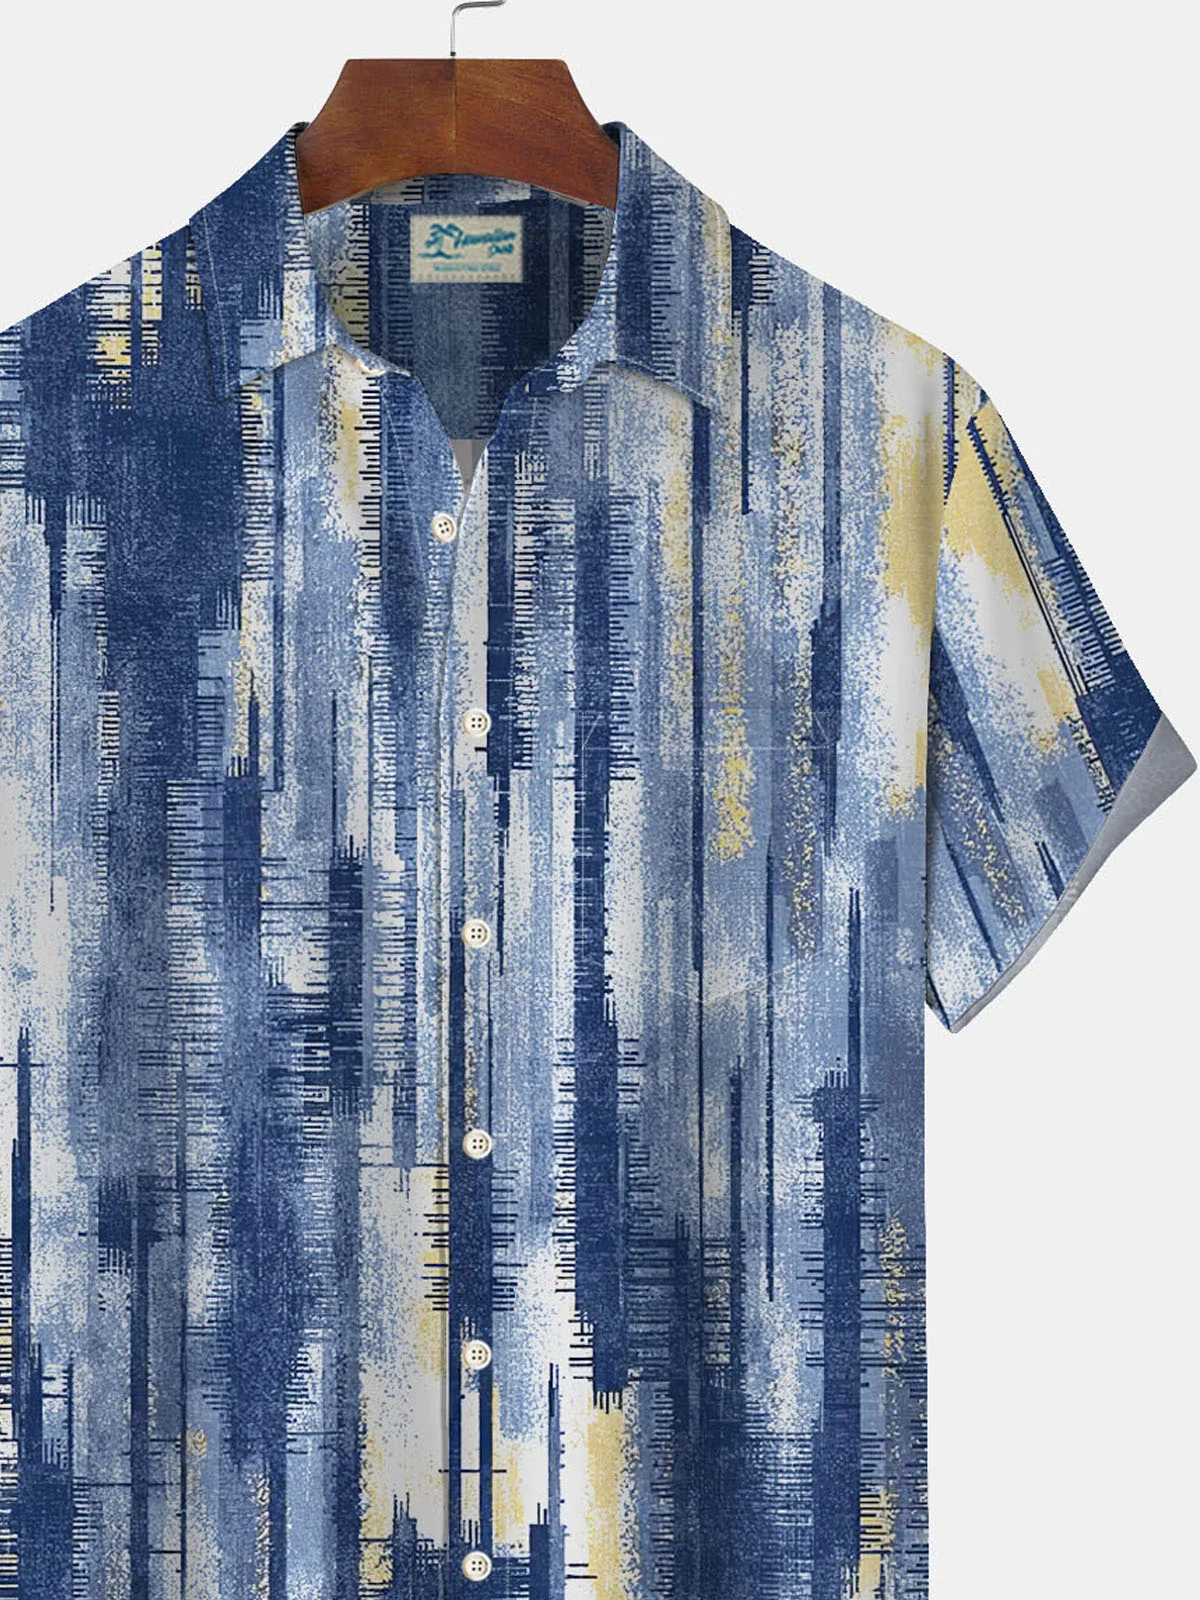 Royaura Vintage Textured Gradient Print Men's Button Pocket Shirt